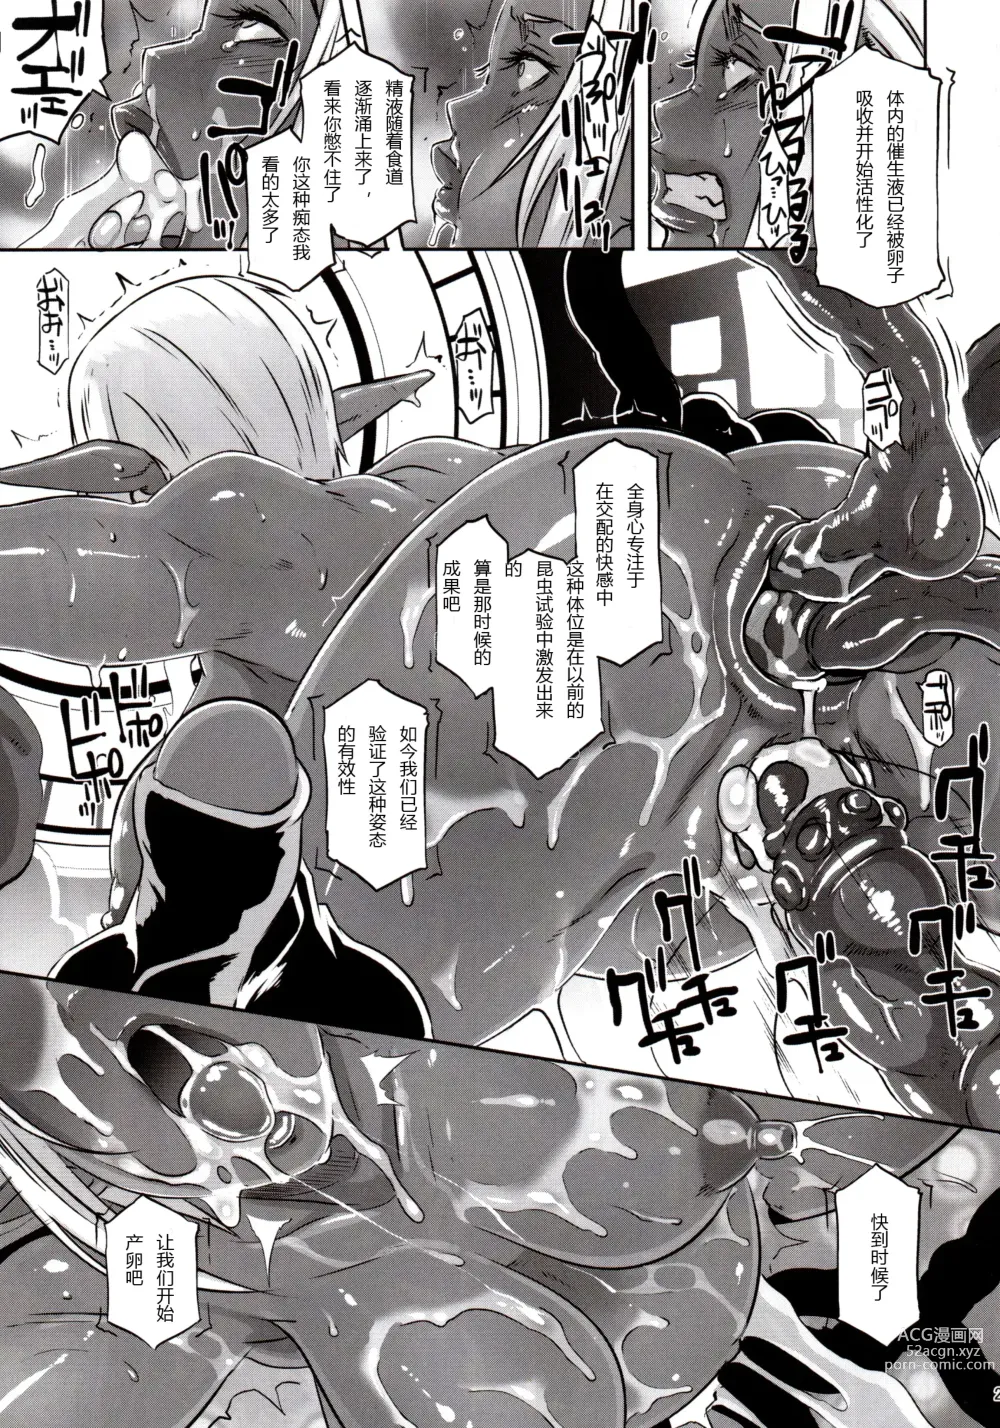 Page 26 of doujinshi DARK ELF vs ALIEN (decensored)